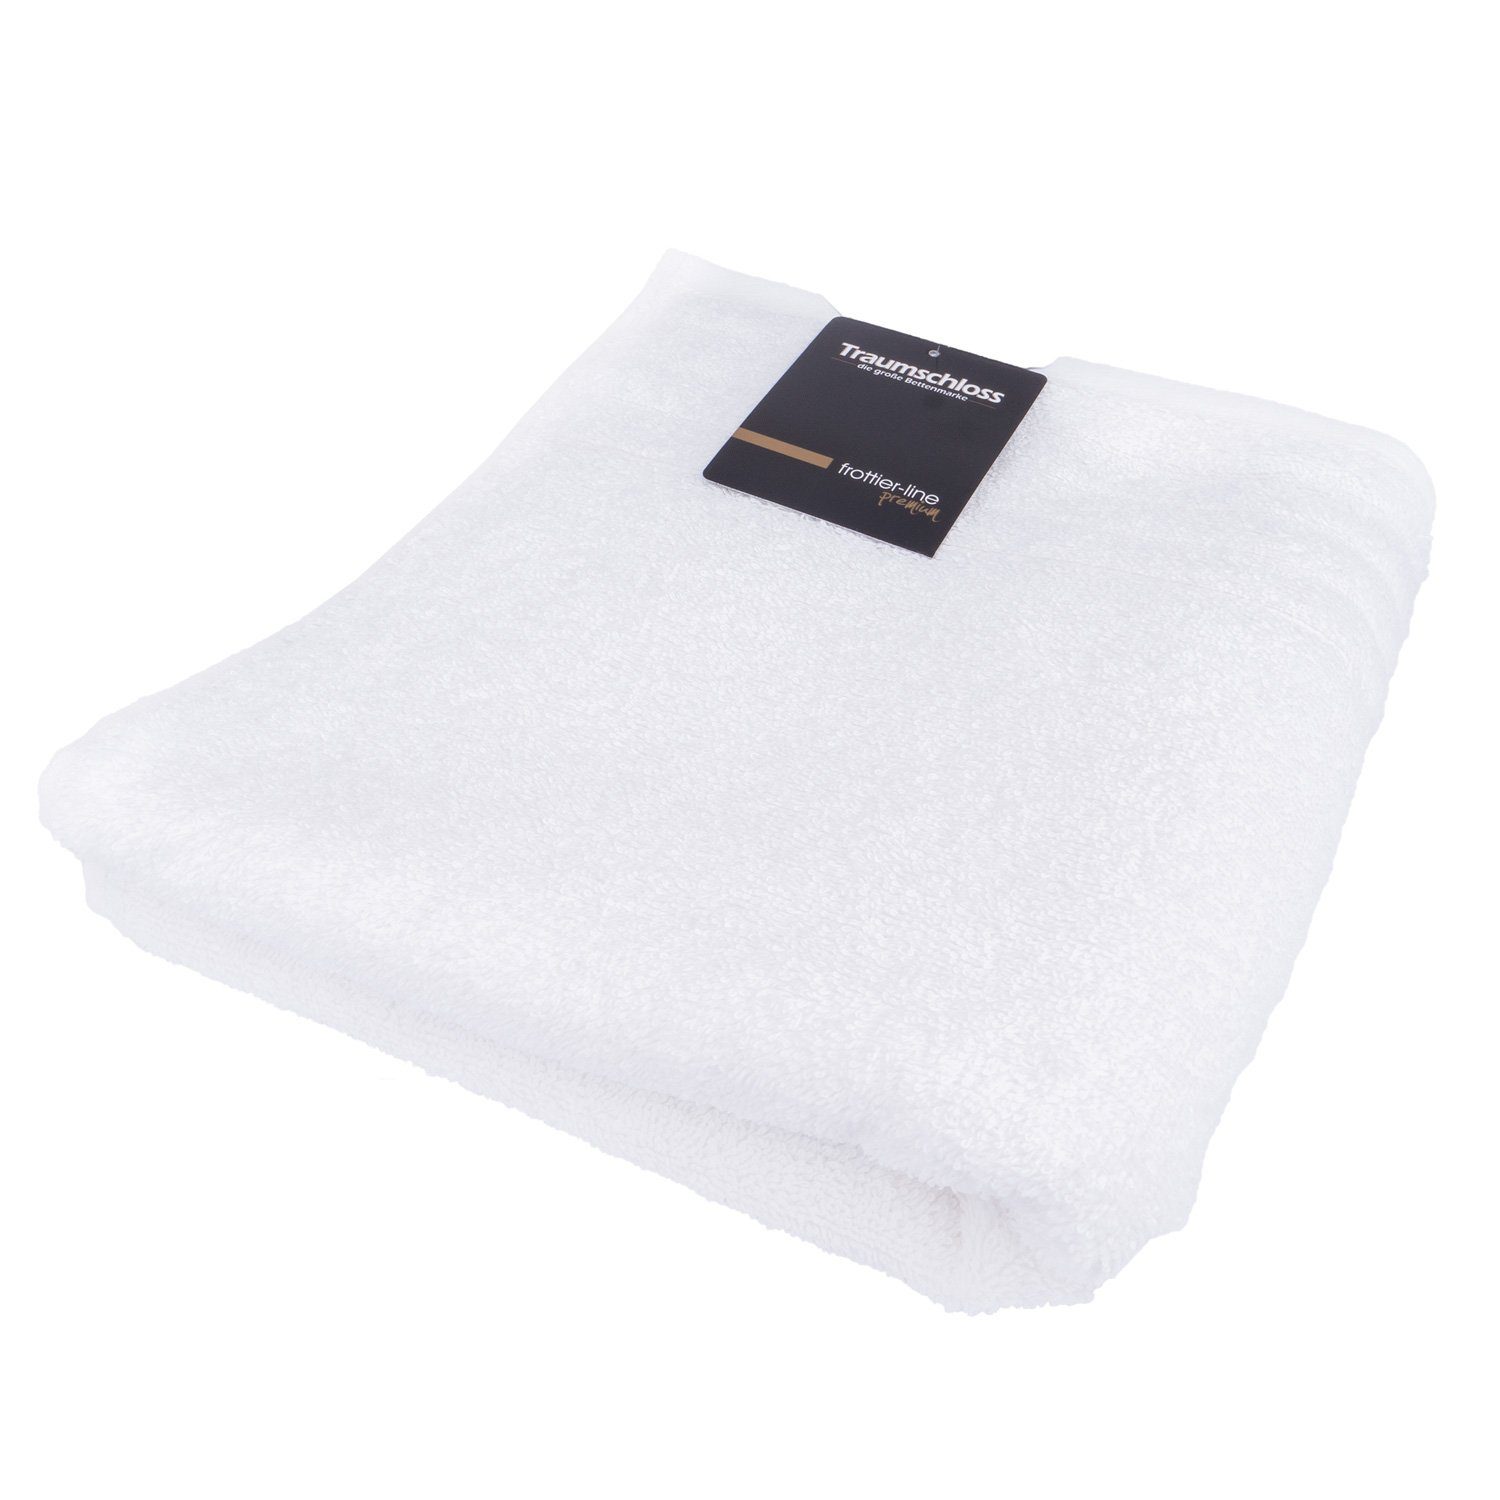 amerikanische Baumwolle 100% Traumschloss Premium-Line, Handtuch Supima (1-St), Frottier 600g/m² mit weiß